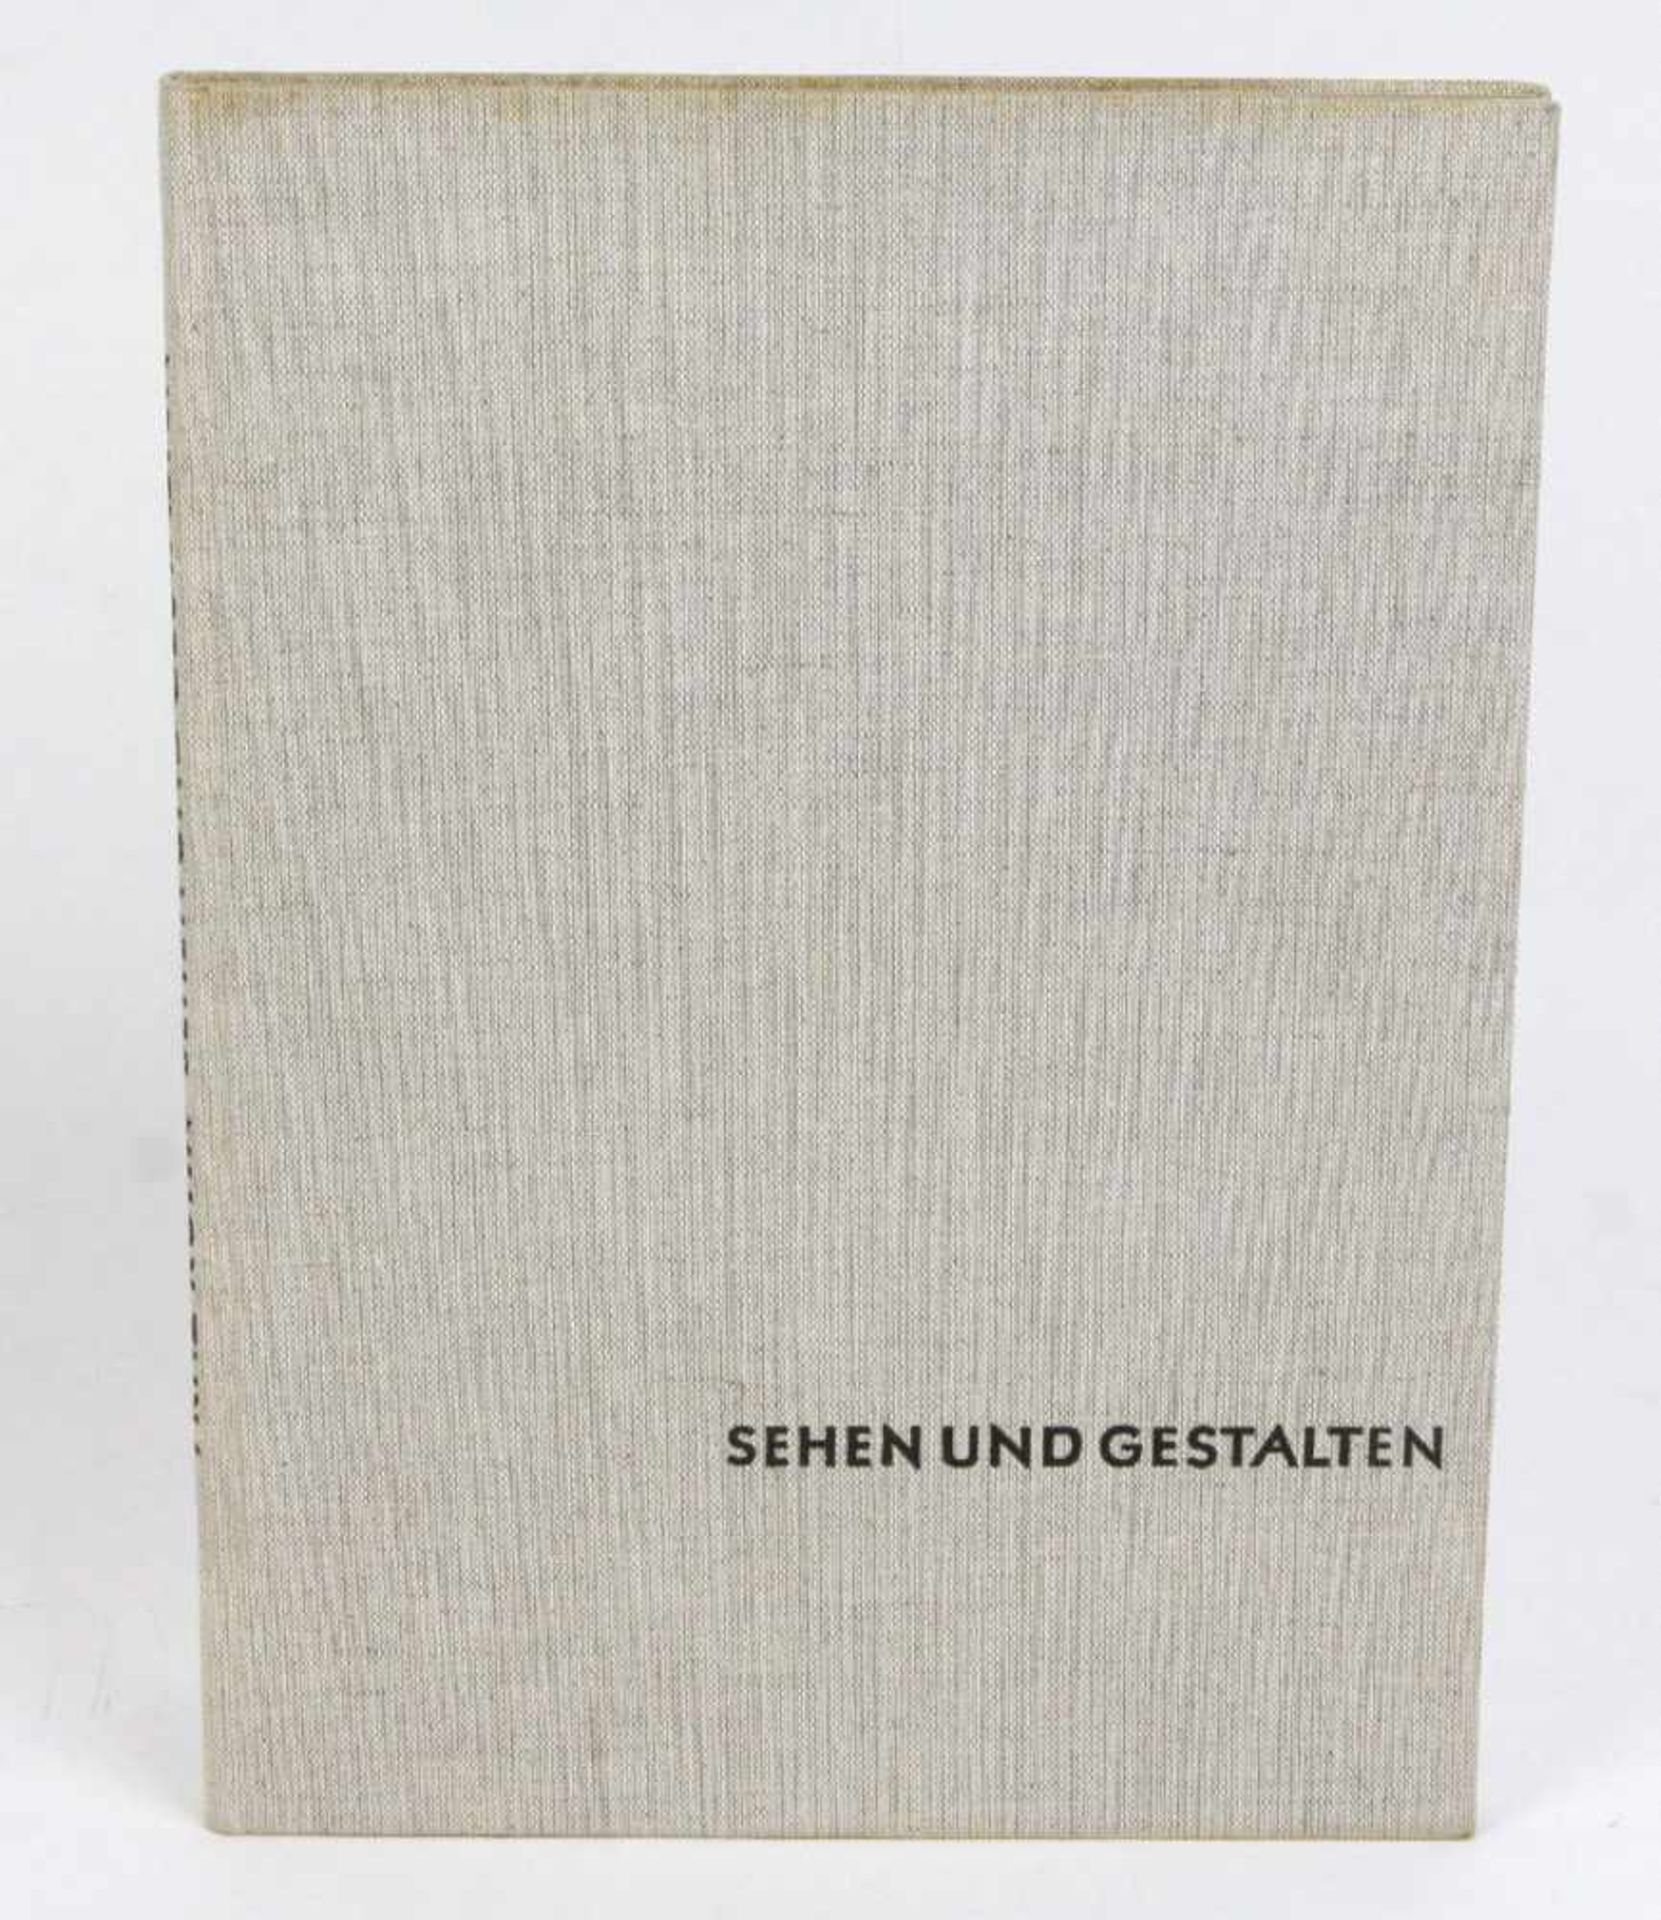 Sehen und GestaltenKühn, Fritz, Sehen und Gestalten, Natur und Menschenwerk, 159 S. m. zahlr. Abb.